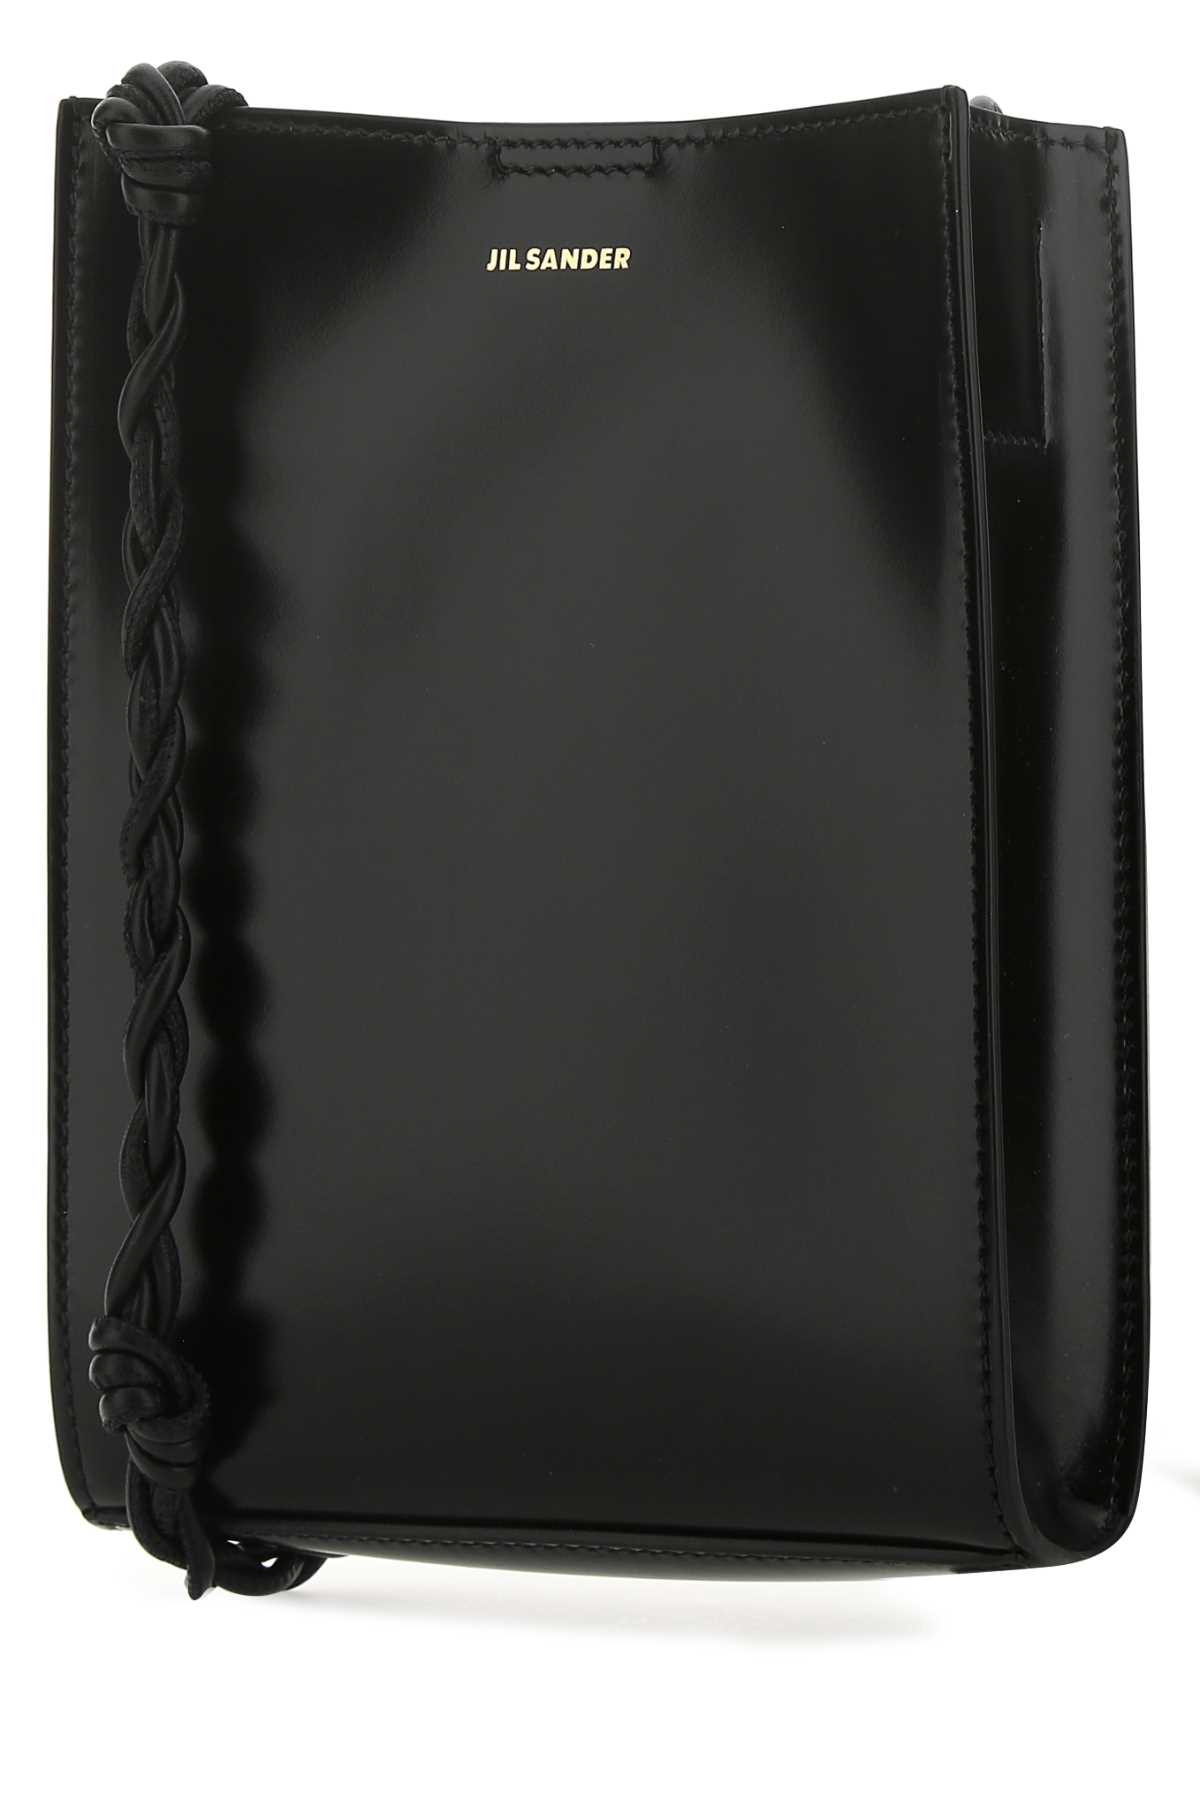 Jil Sander Black Leather Small Tangle Shoulder Bag In 001